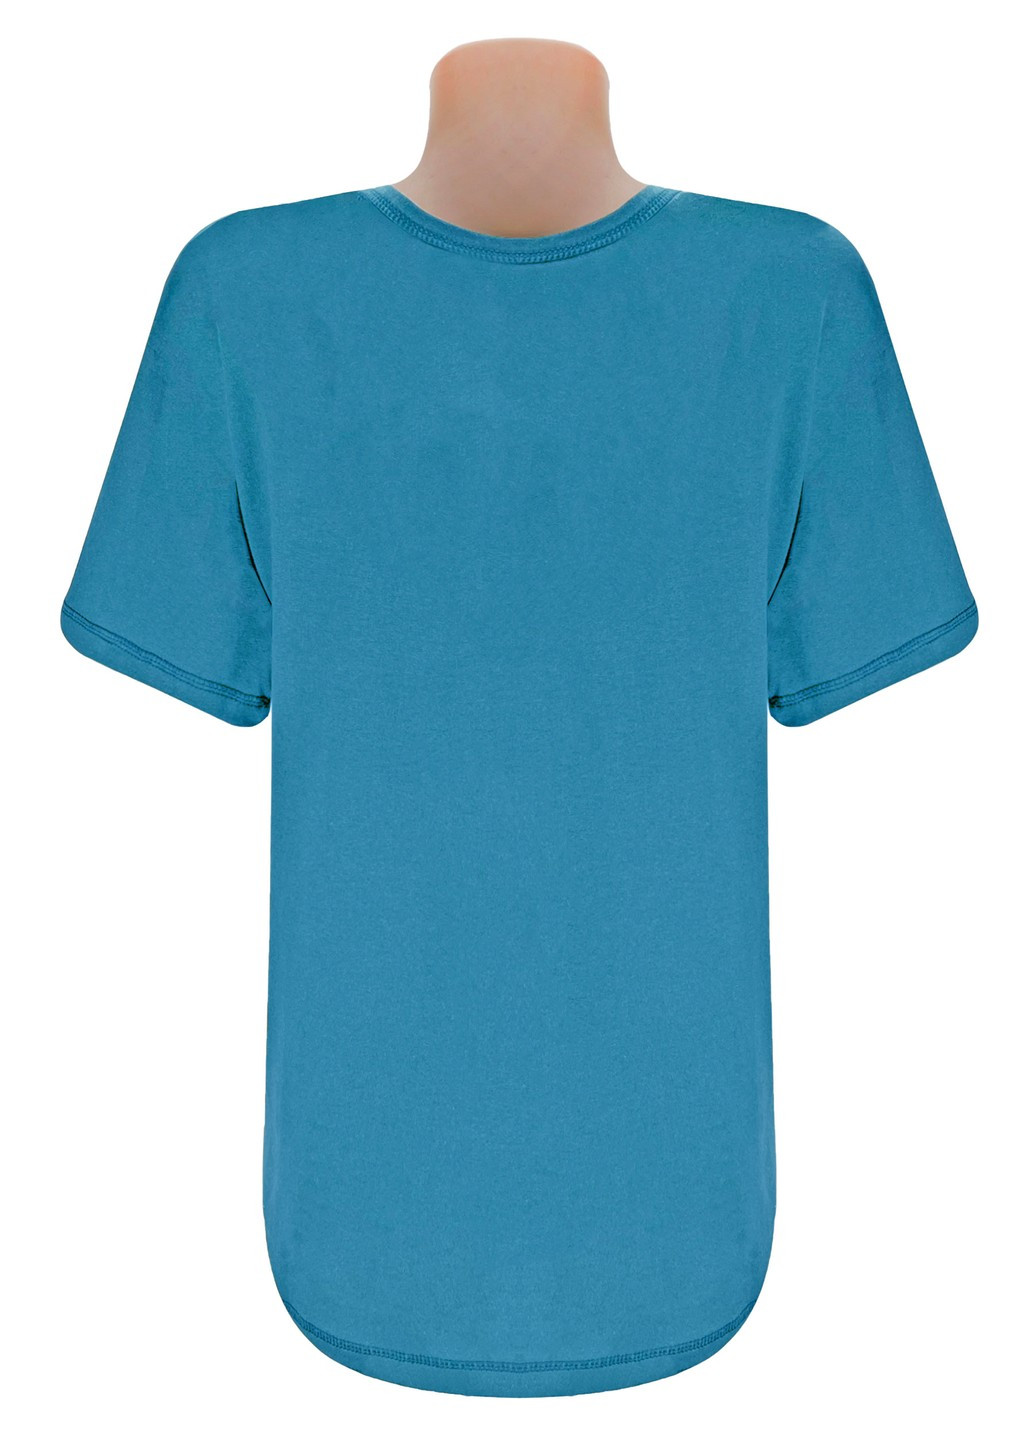 Бирюзовая футболка мужская кулир с коротким рукавом Жемчужина стилей 4601